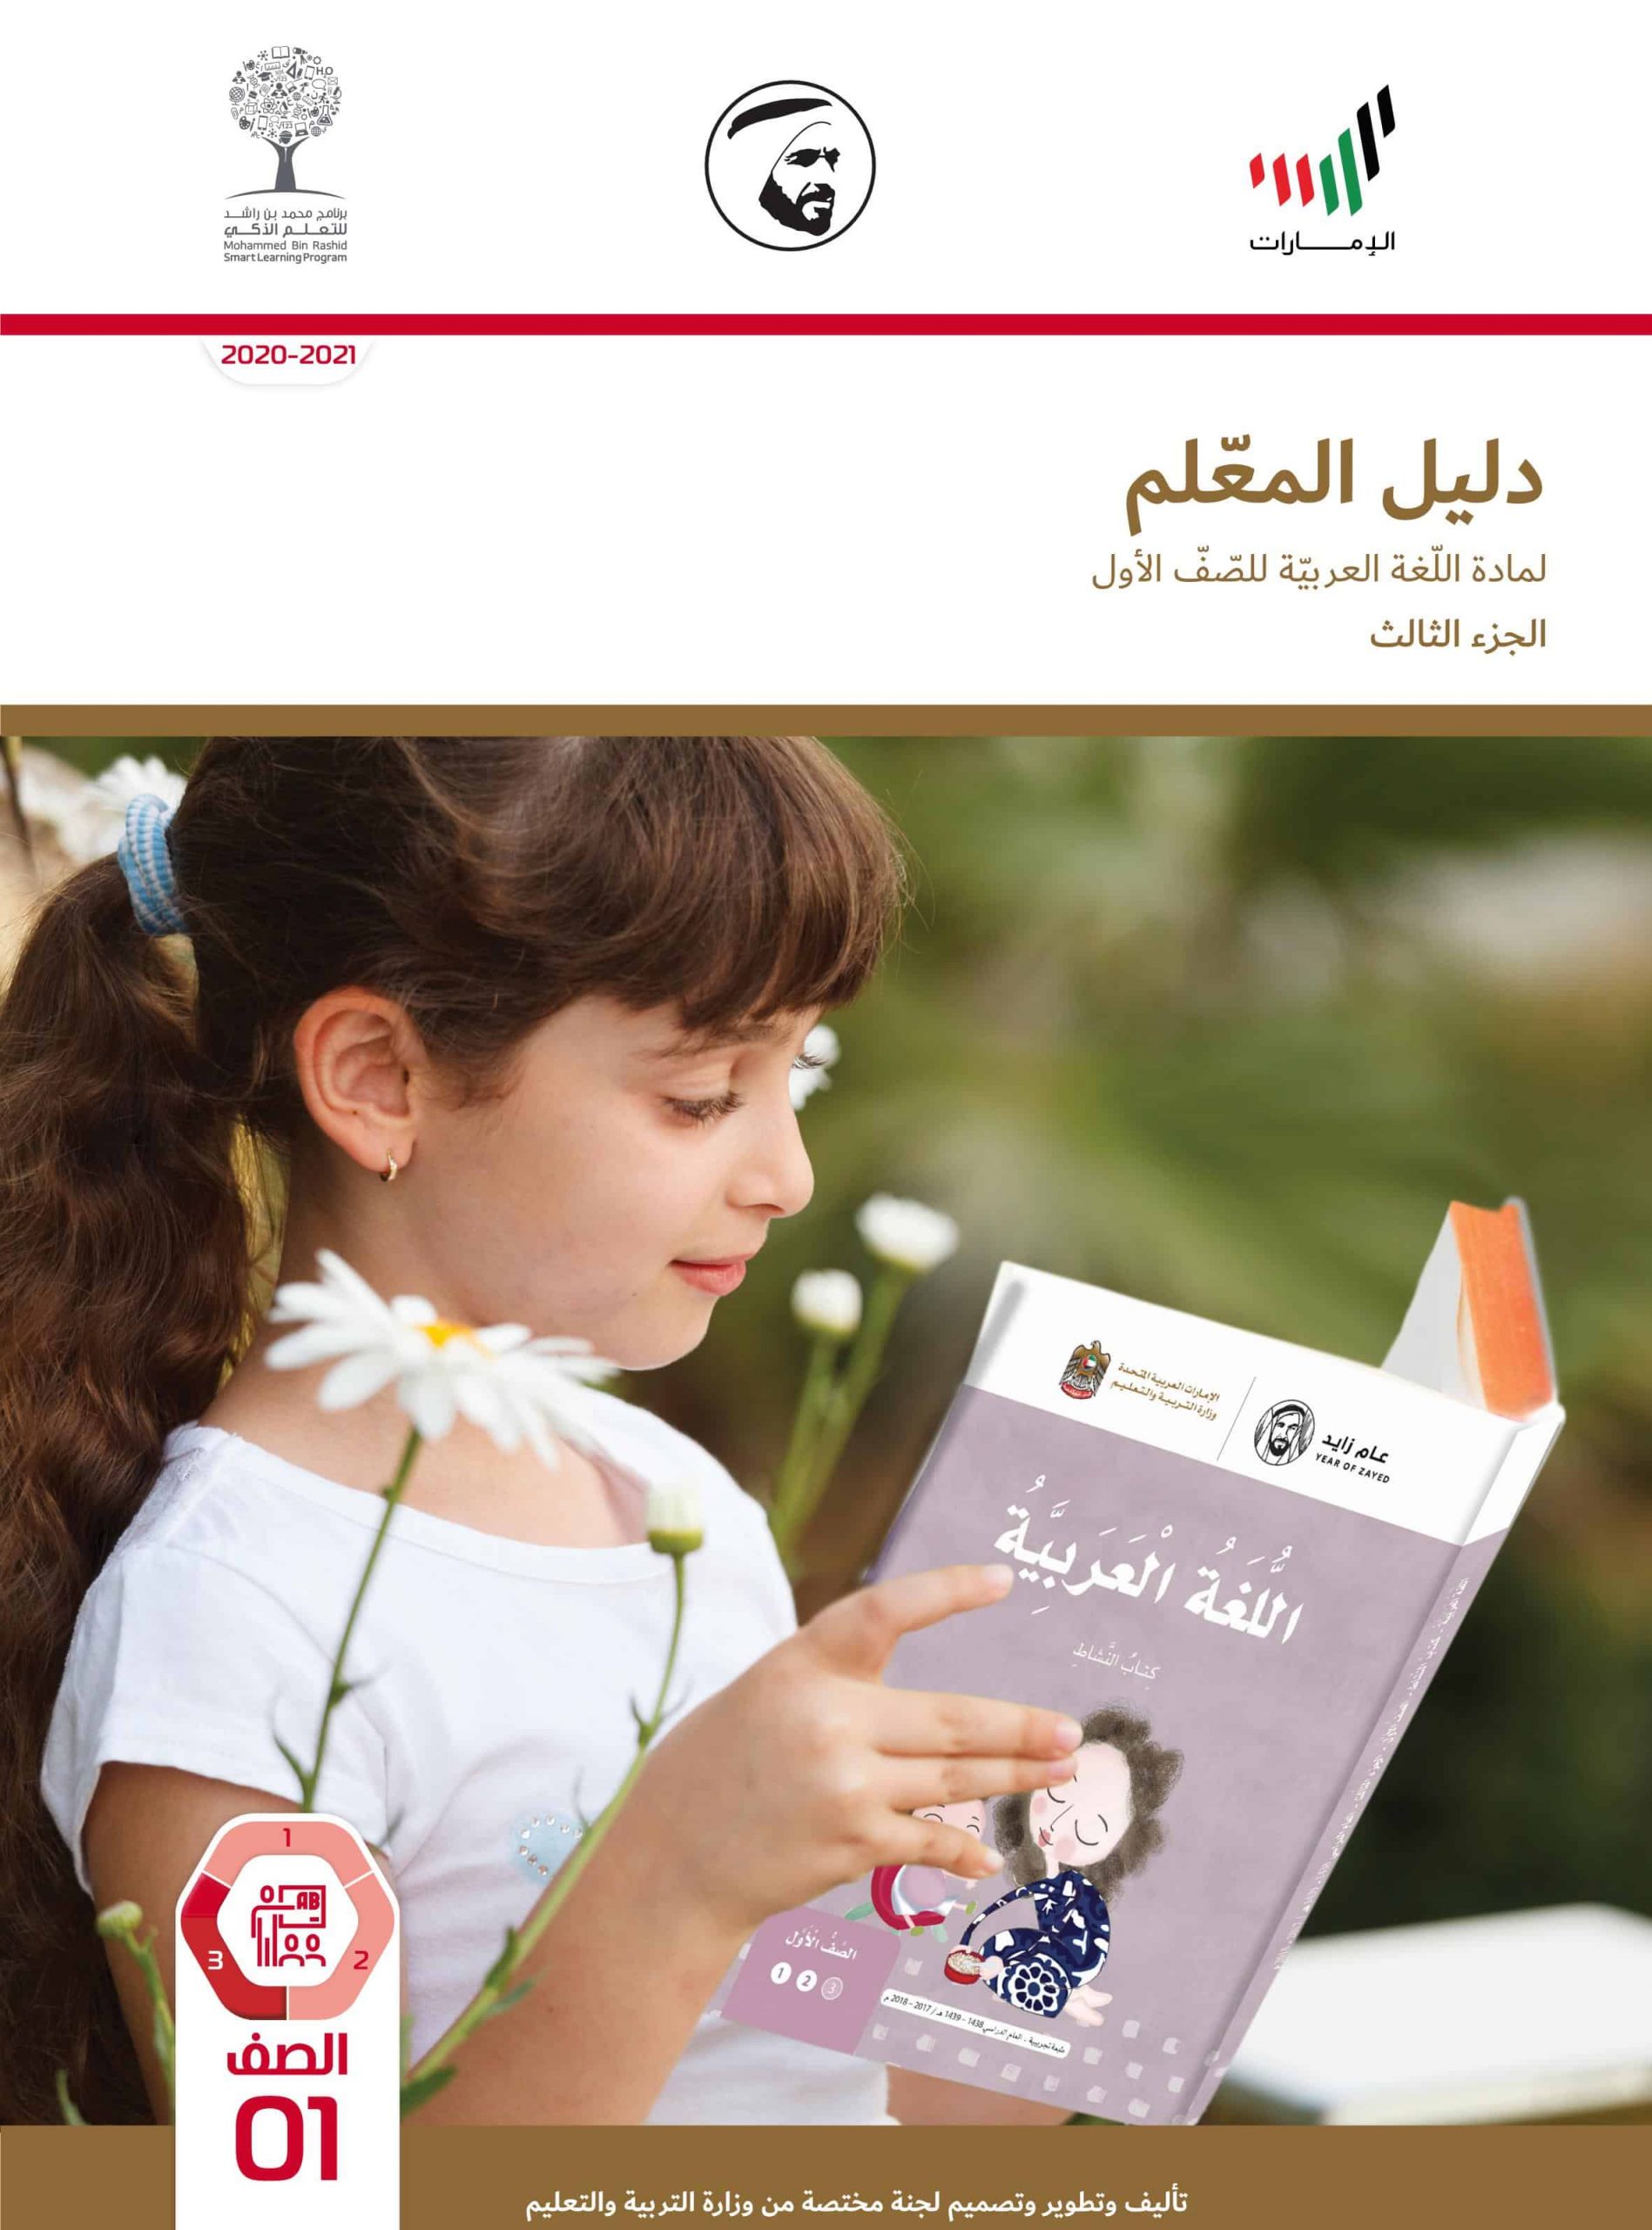 دليل المعلم الفصل الدراسي الثالث 2020-2021 الصف الأول مادة اللغة العربية